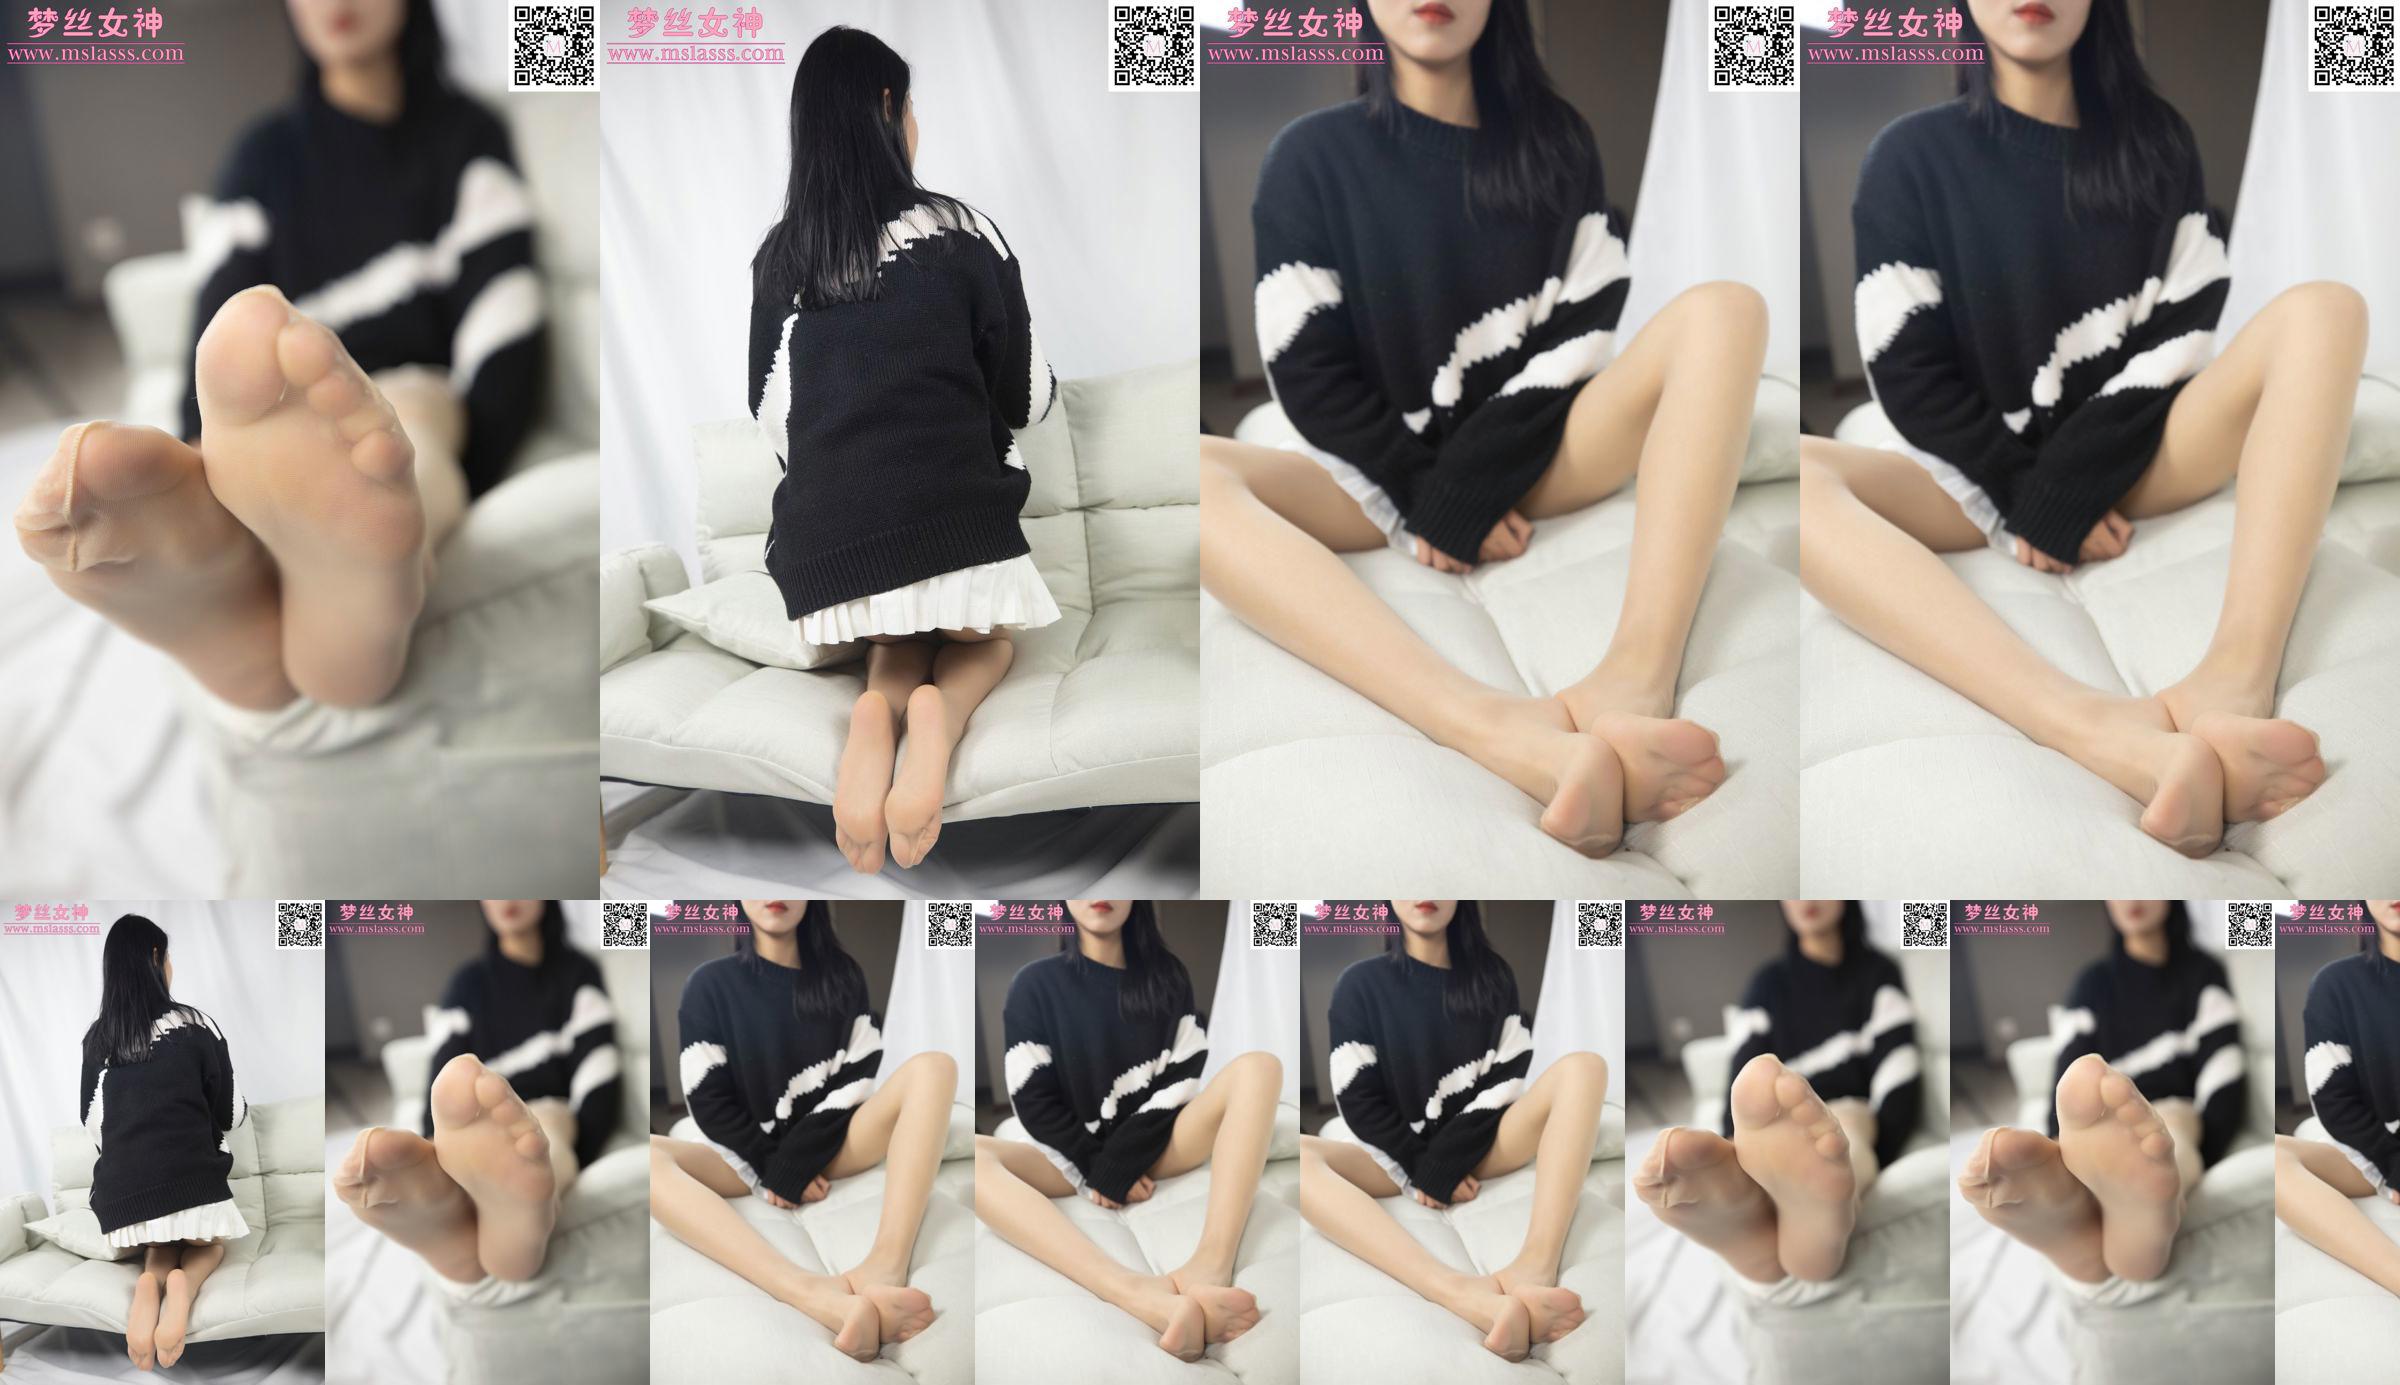 [꿈의 여신 MSLASS] Xiaomu의 스웨터는 그녀의 긴 다리를 막을 수 없습니다 No.70a370 페이지 8